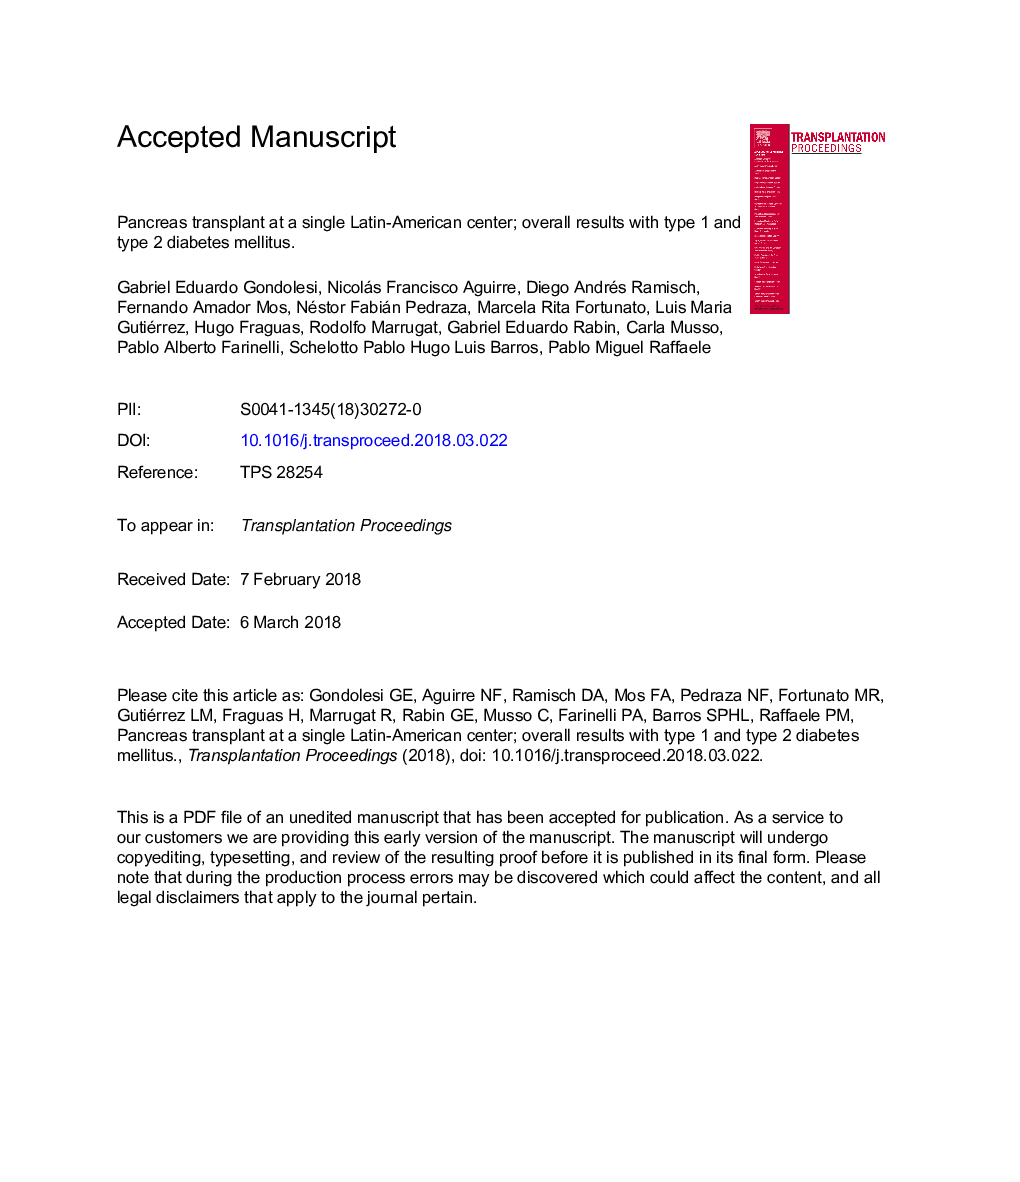 پیوند پانکراس در یک مرکز آمریکای لاتین؛ نتایج کلی با دیابت نوع 1 و نوع 2 